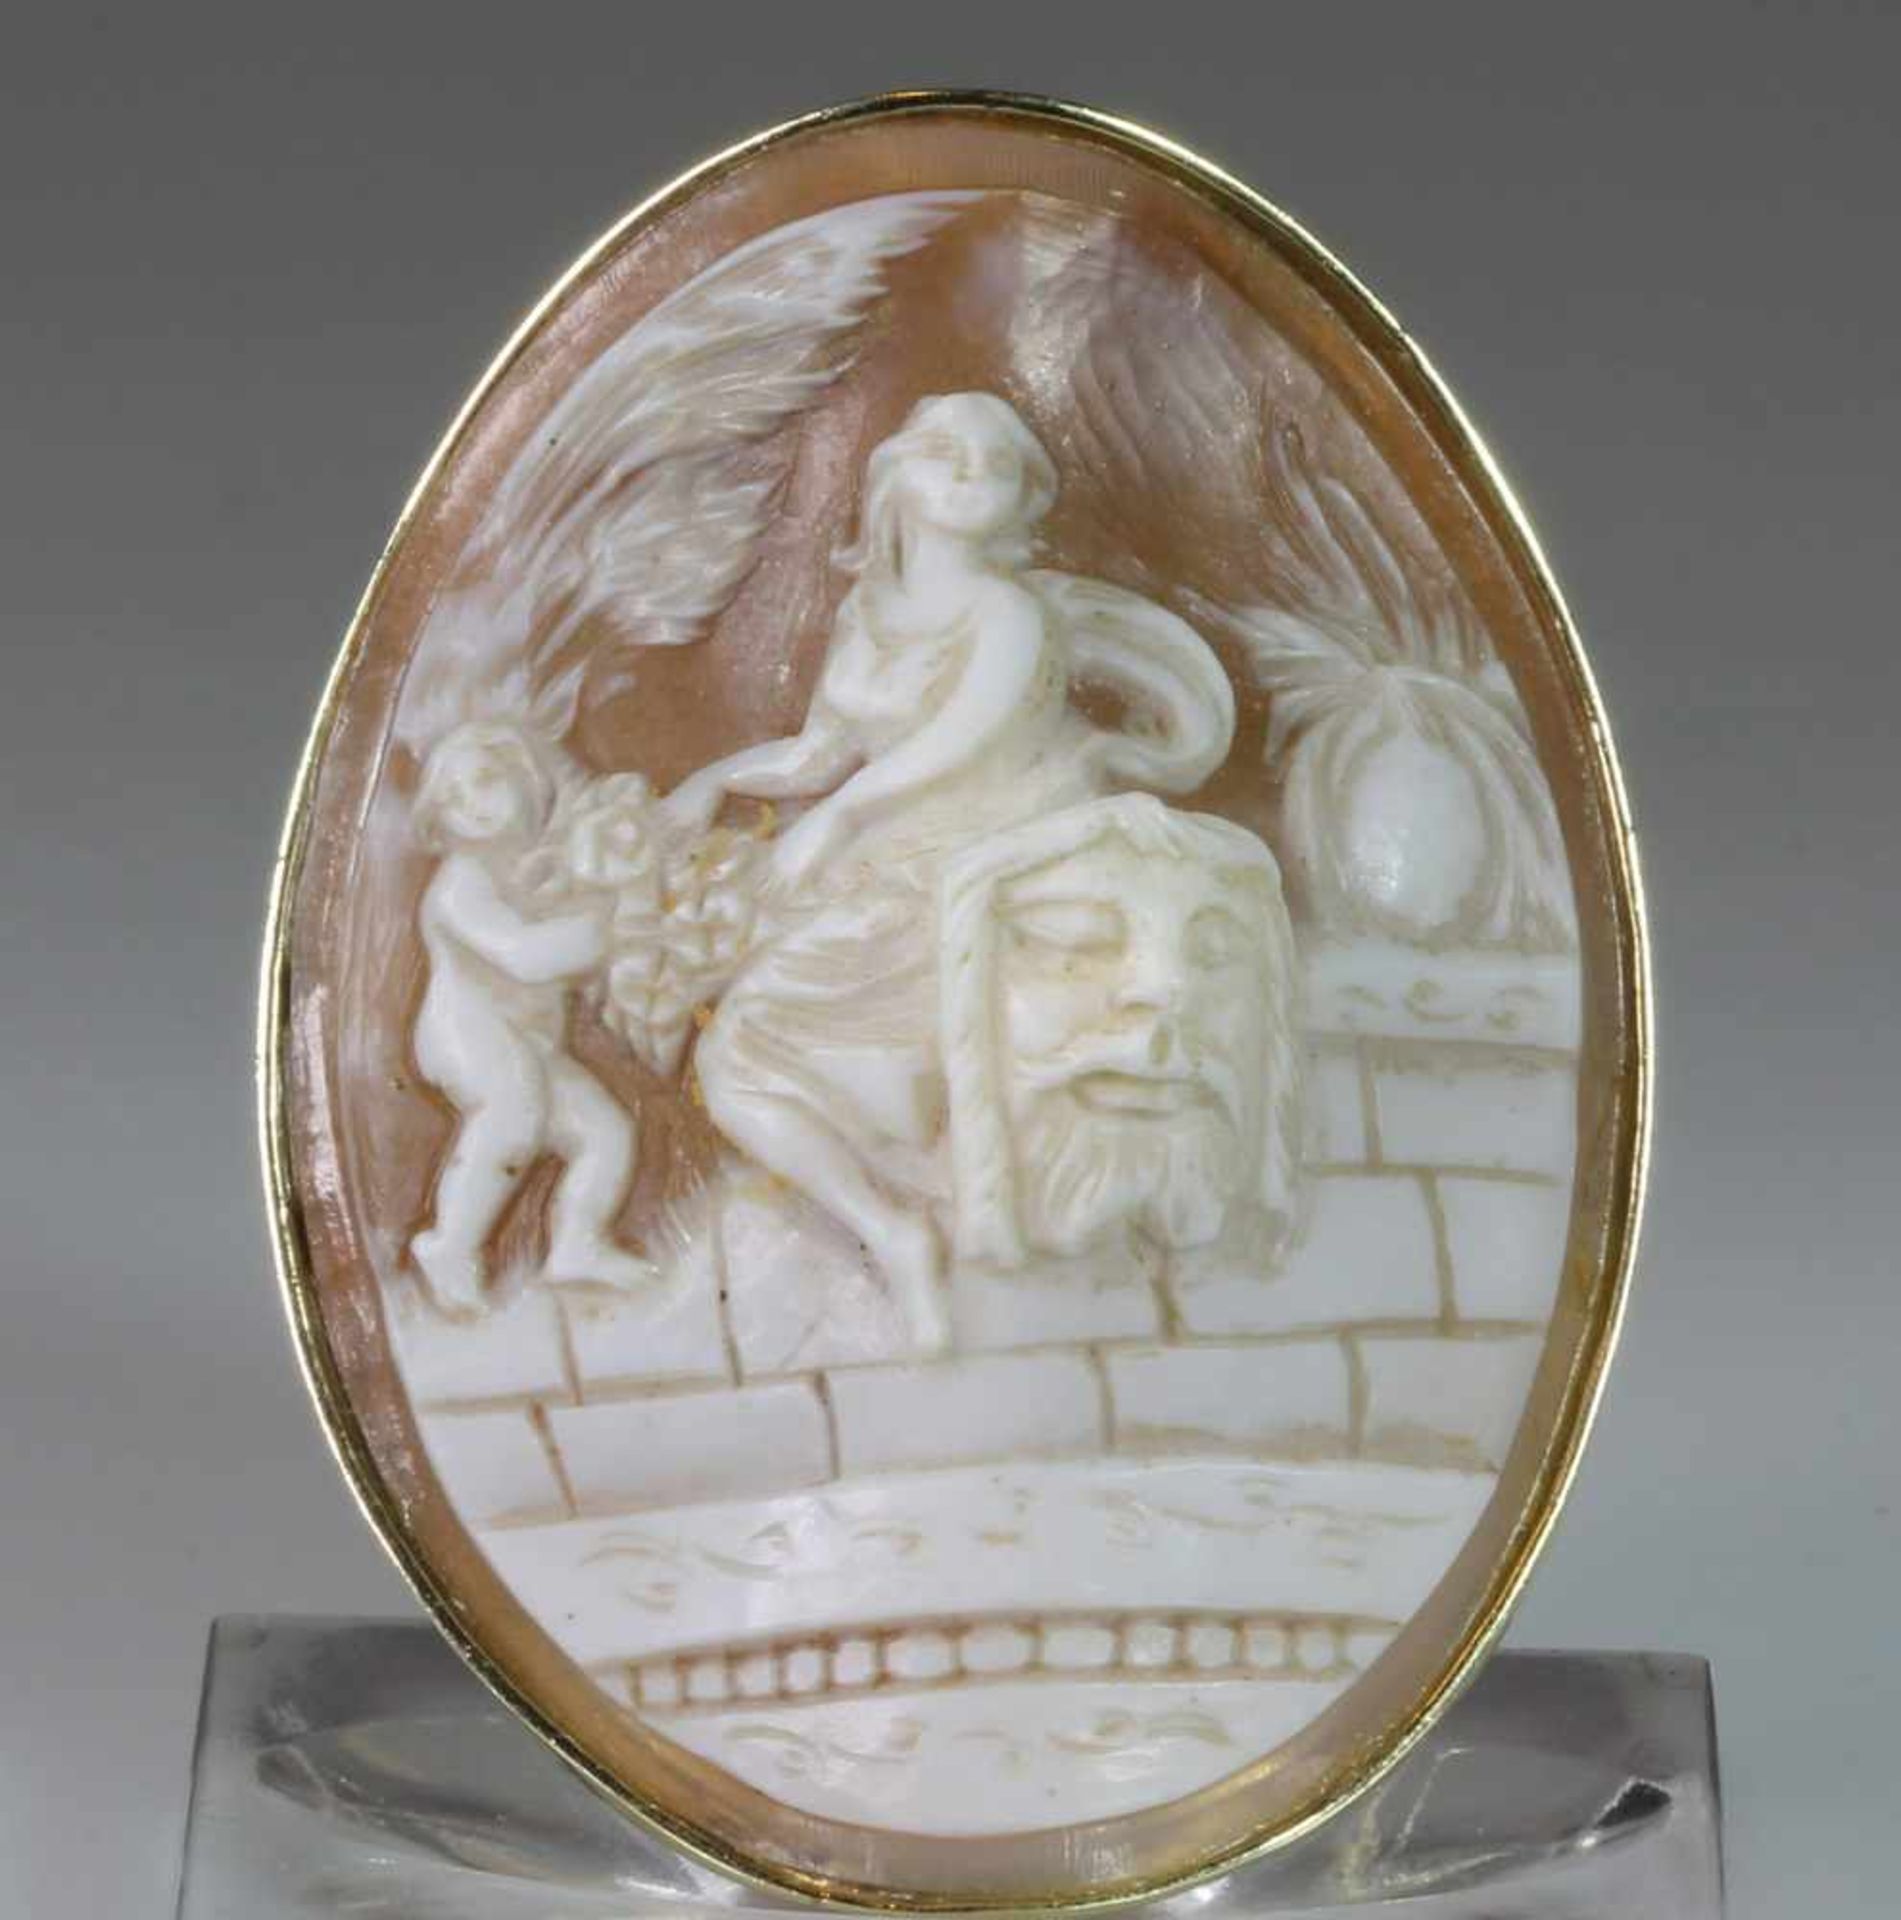 Anhänger/Brosche, GG 585, Muschelkamee, mythologische Darstellung, 17 g, 5.5 x 4.5 cm- - -25.00 %